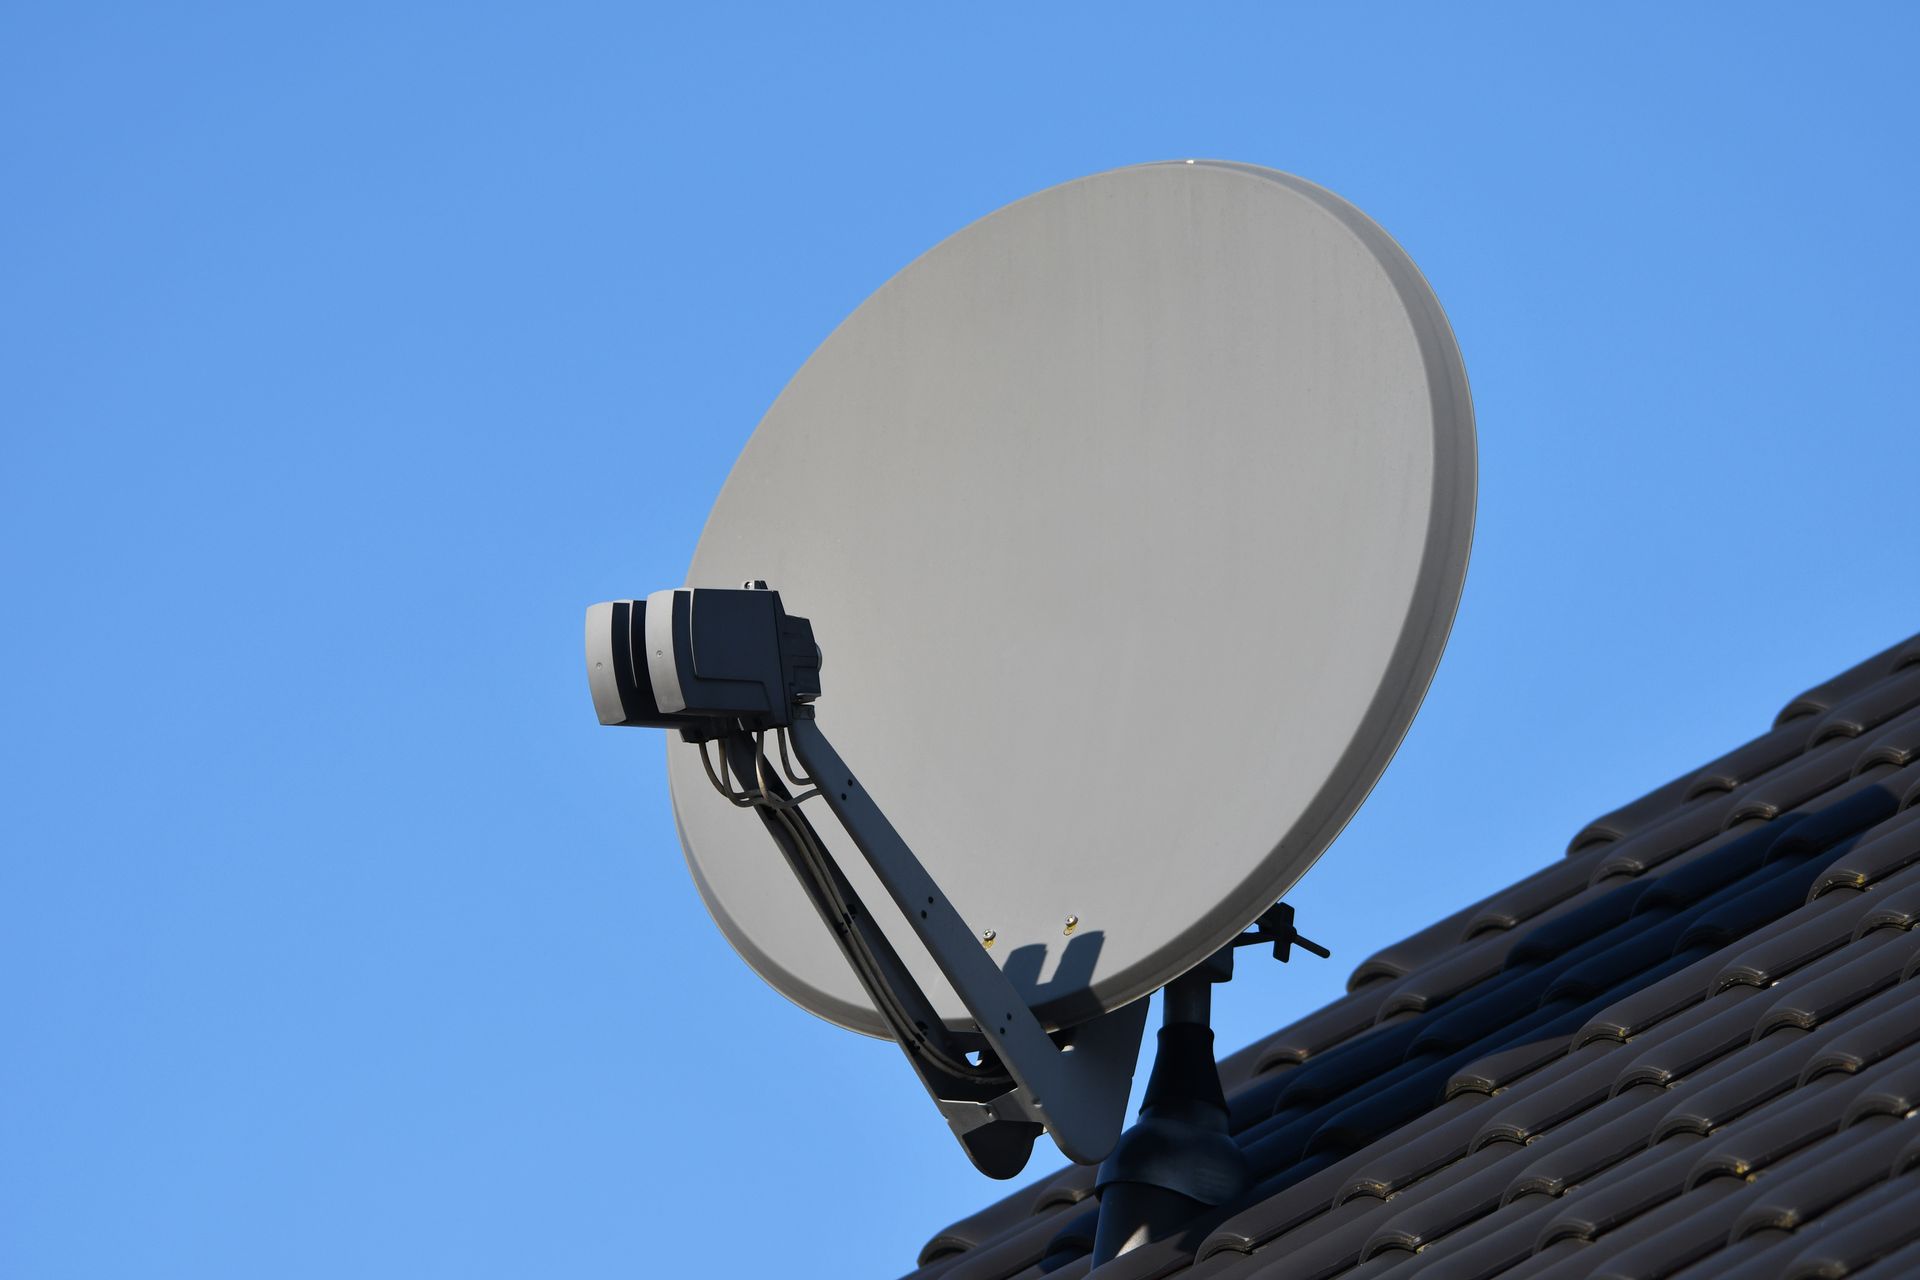 Antenne râteau installée sur un toit